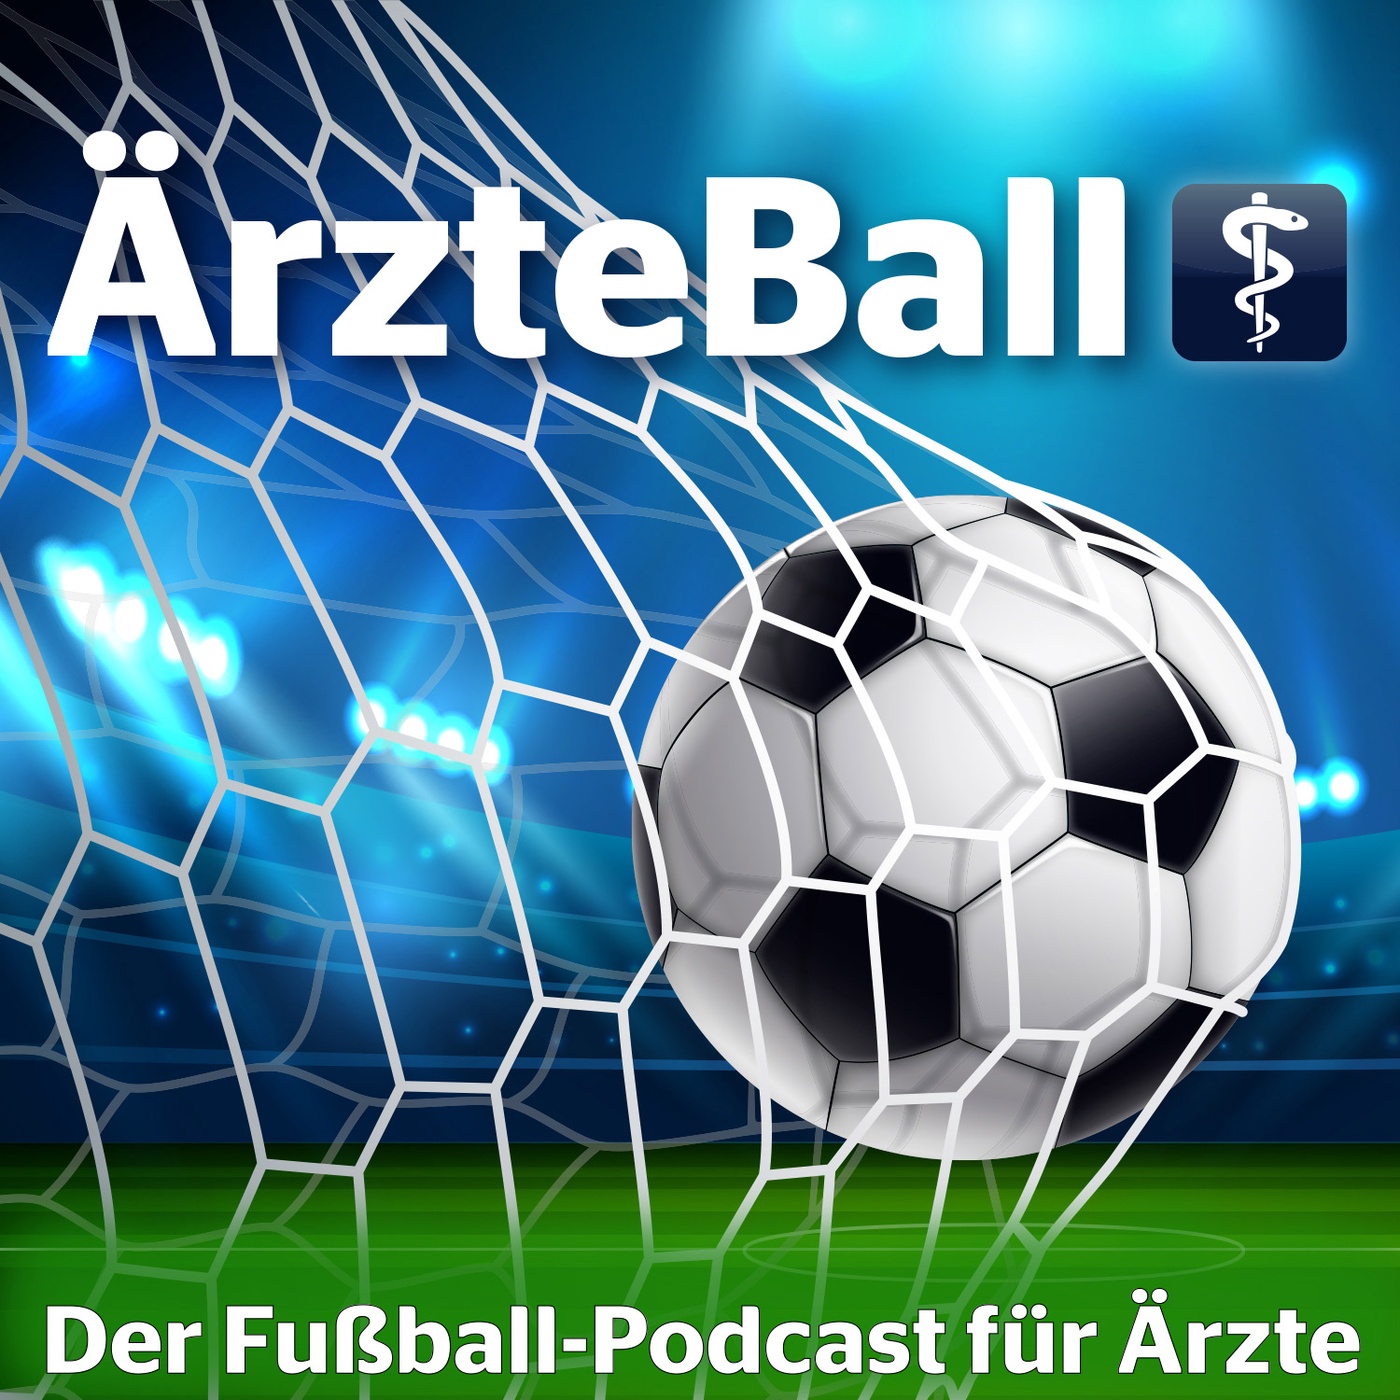 ÄrzteBall – der Fußball-Podcast für Ärzte